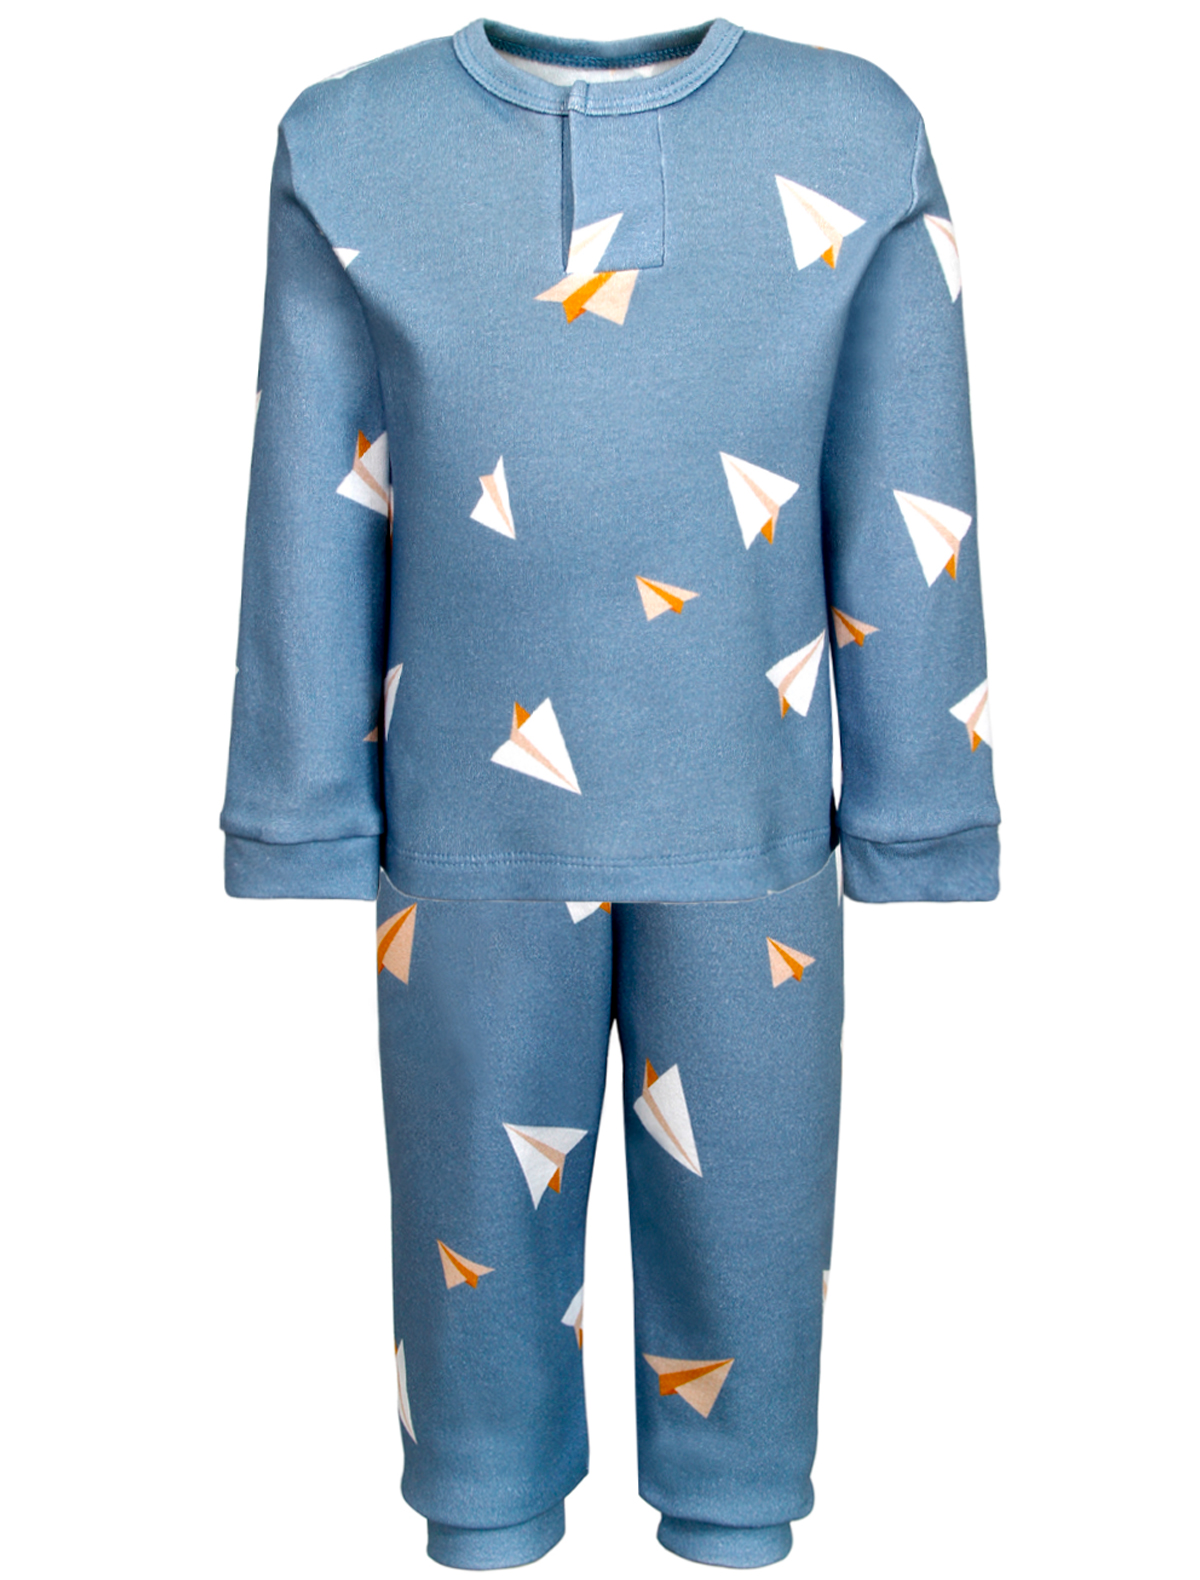 пижама tony tots для мальчика, голубая